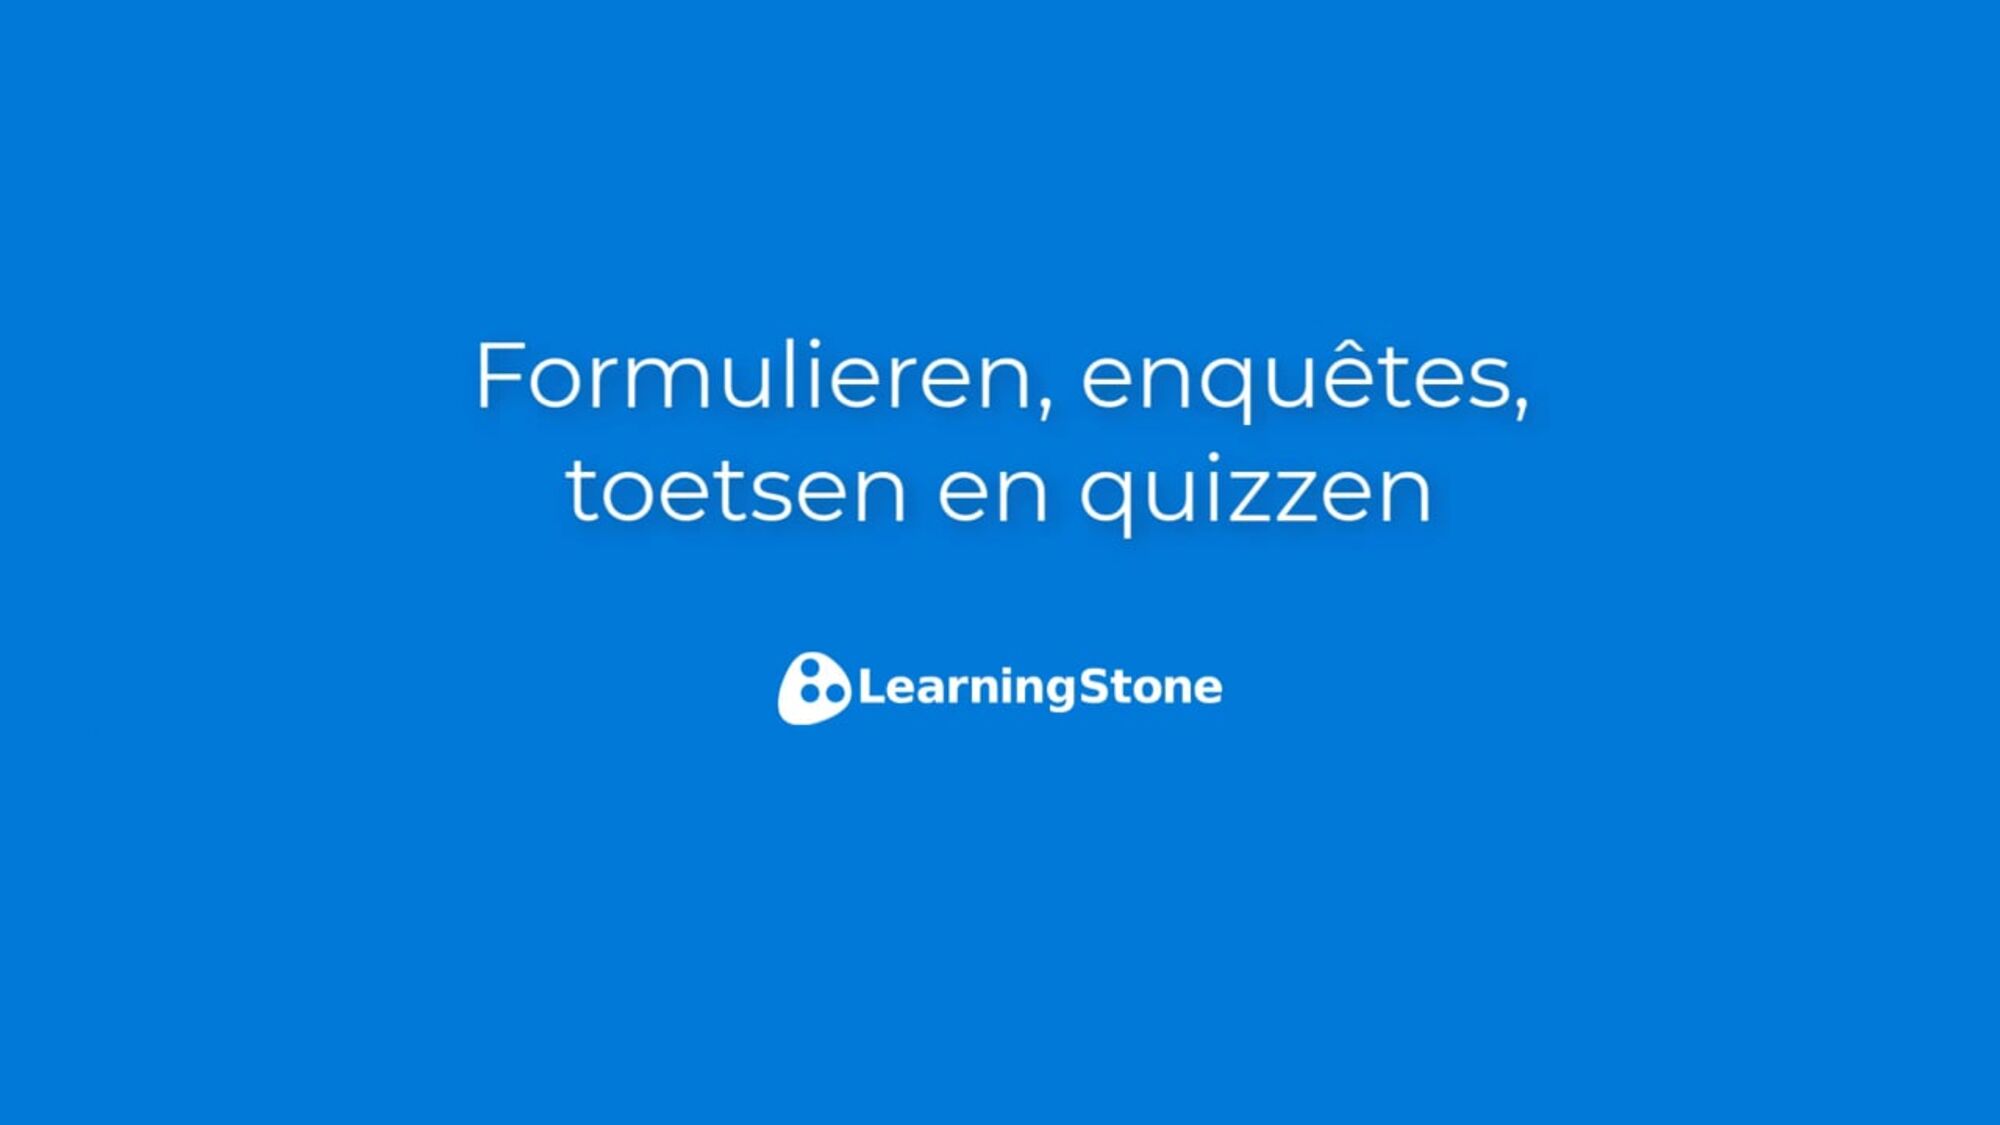 Formulieren, enquêtes, toetsen & quizzen NL